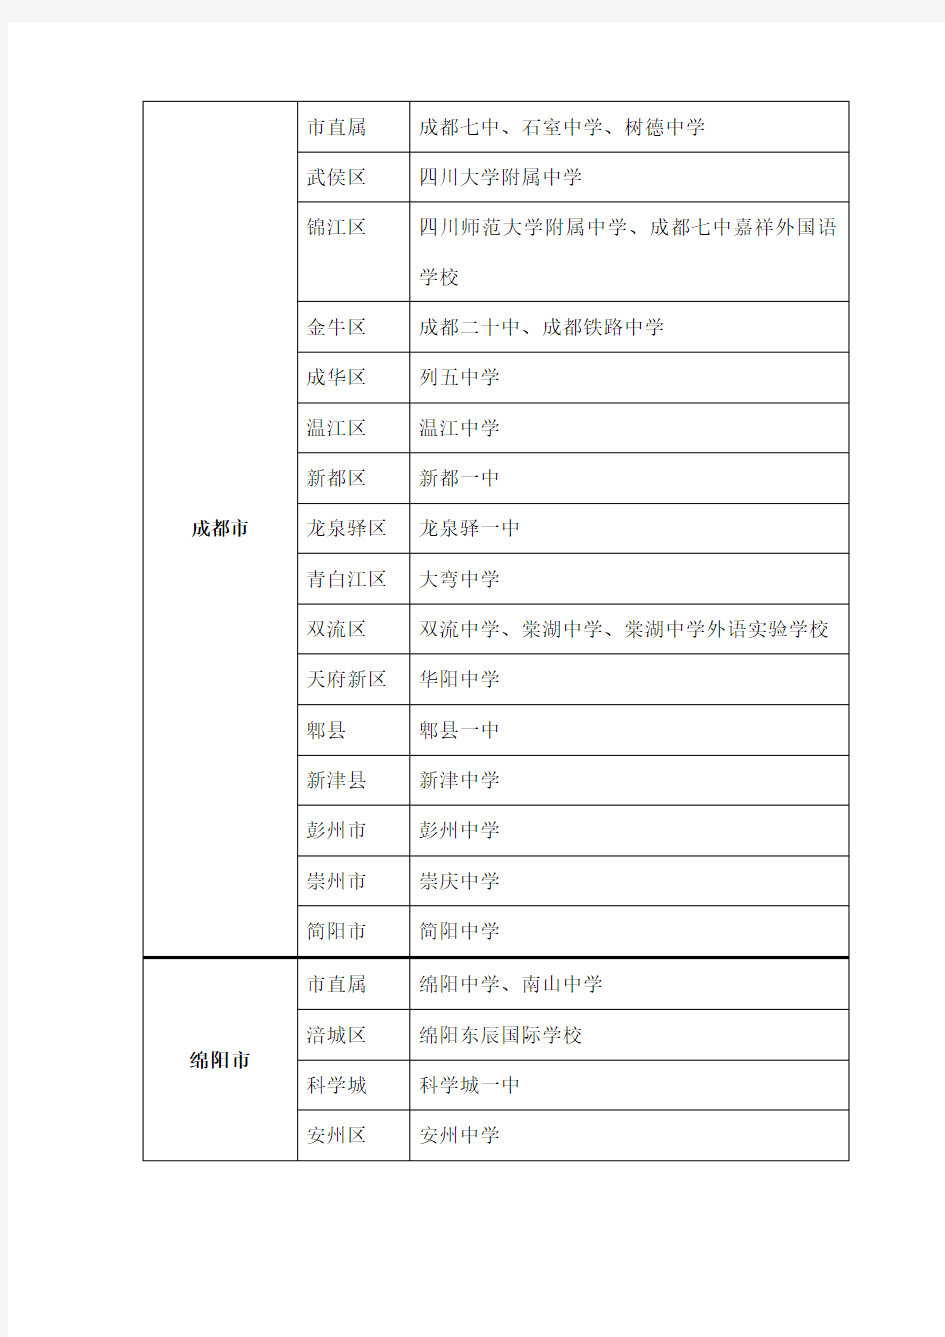 四川省一级示范性普通高中名单